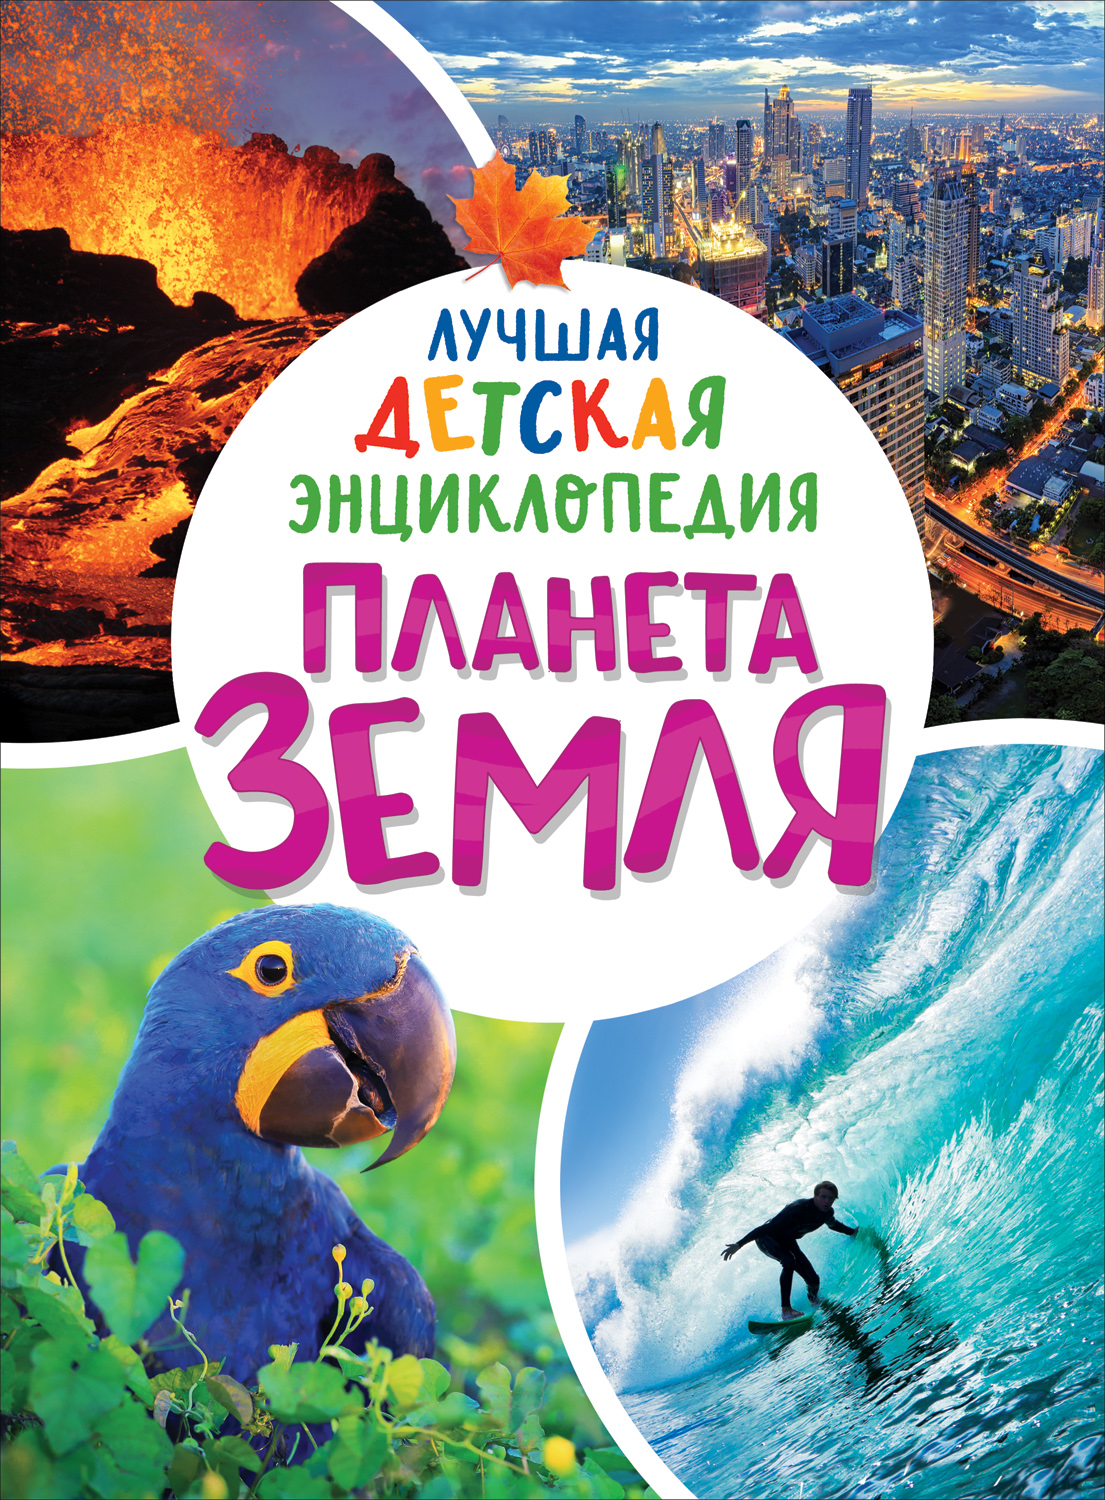 Книга Планета Земля Лучшая детская энциклопедия